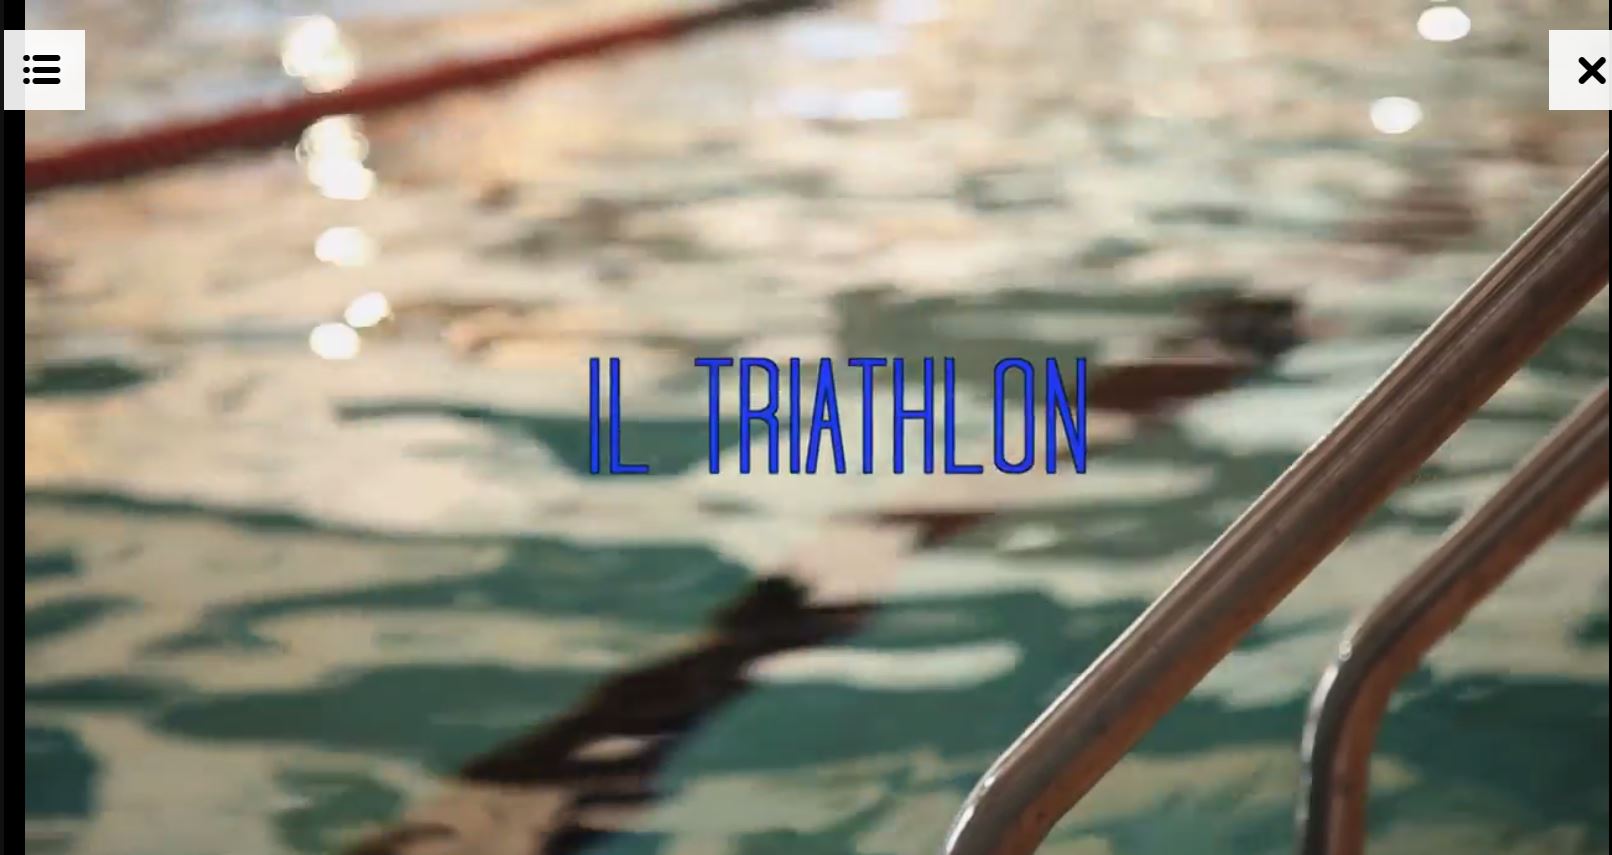  #SiamoilTriathlon i nostri Fabian, Uccellari, Mazzetti e Betto raccontano il Triathlon